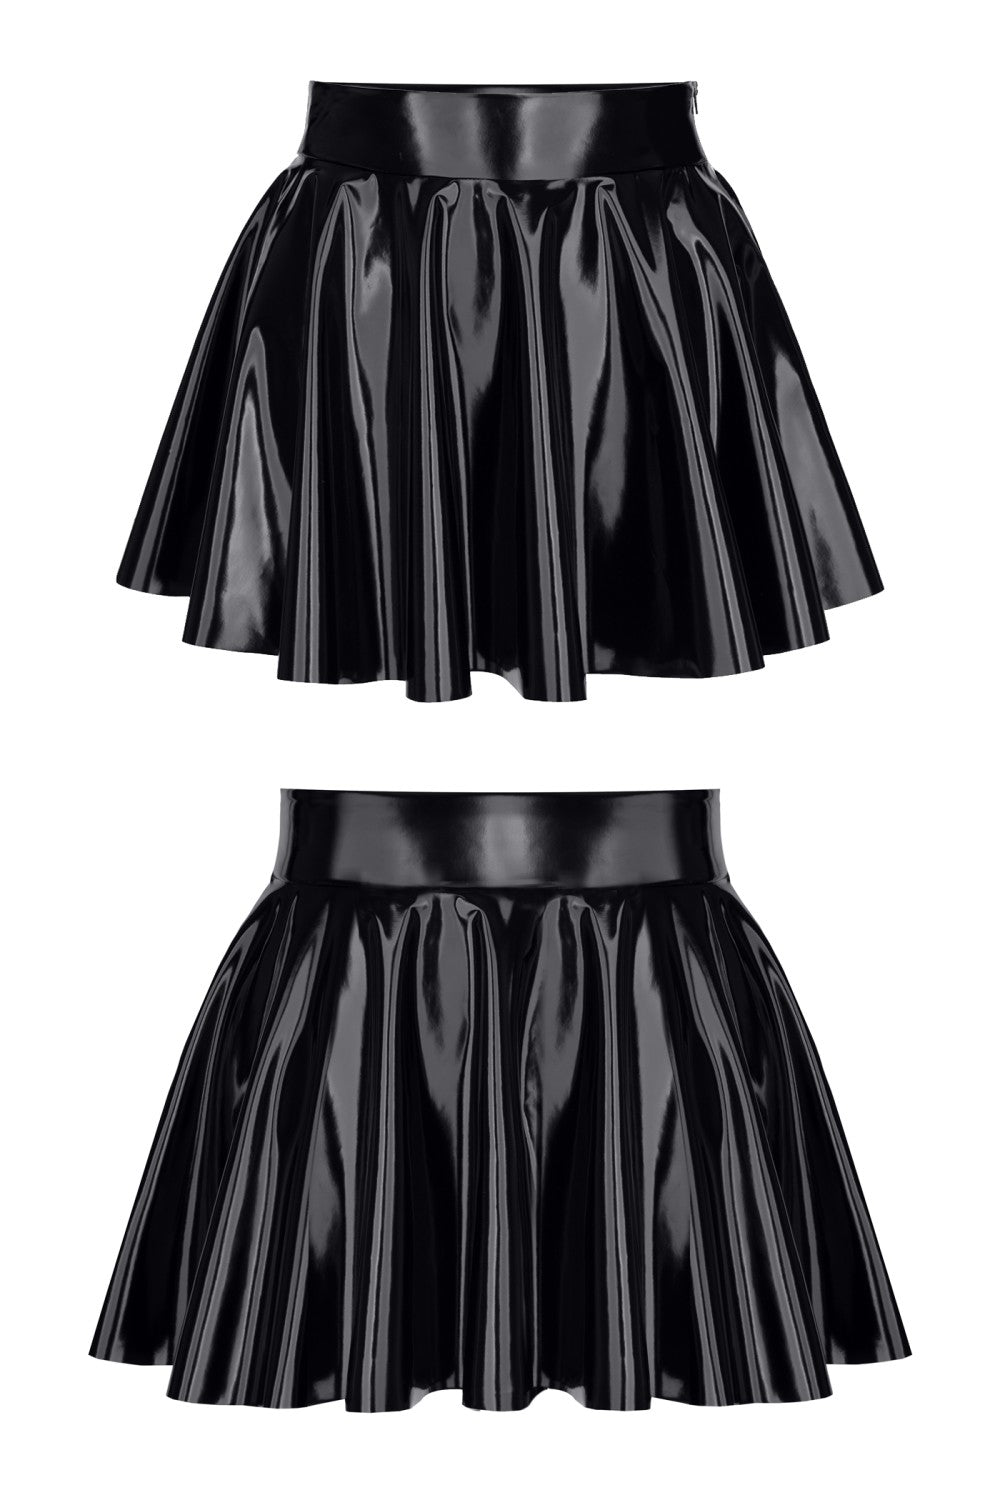 Maren Wetlook Mini Skirt